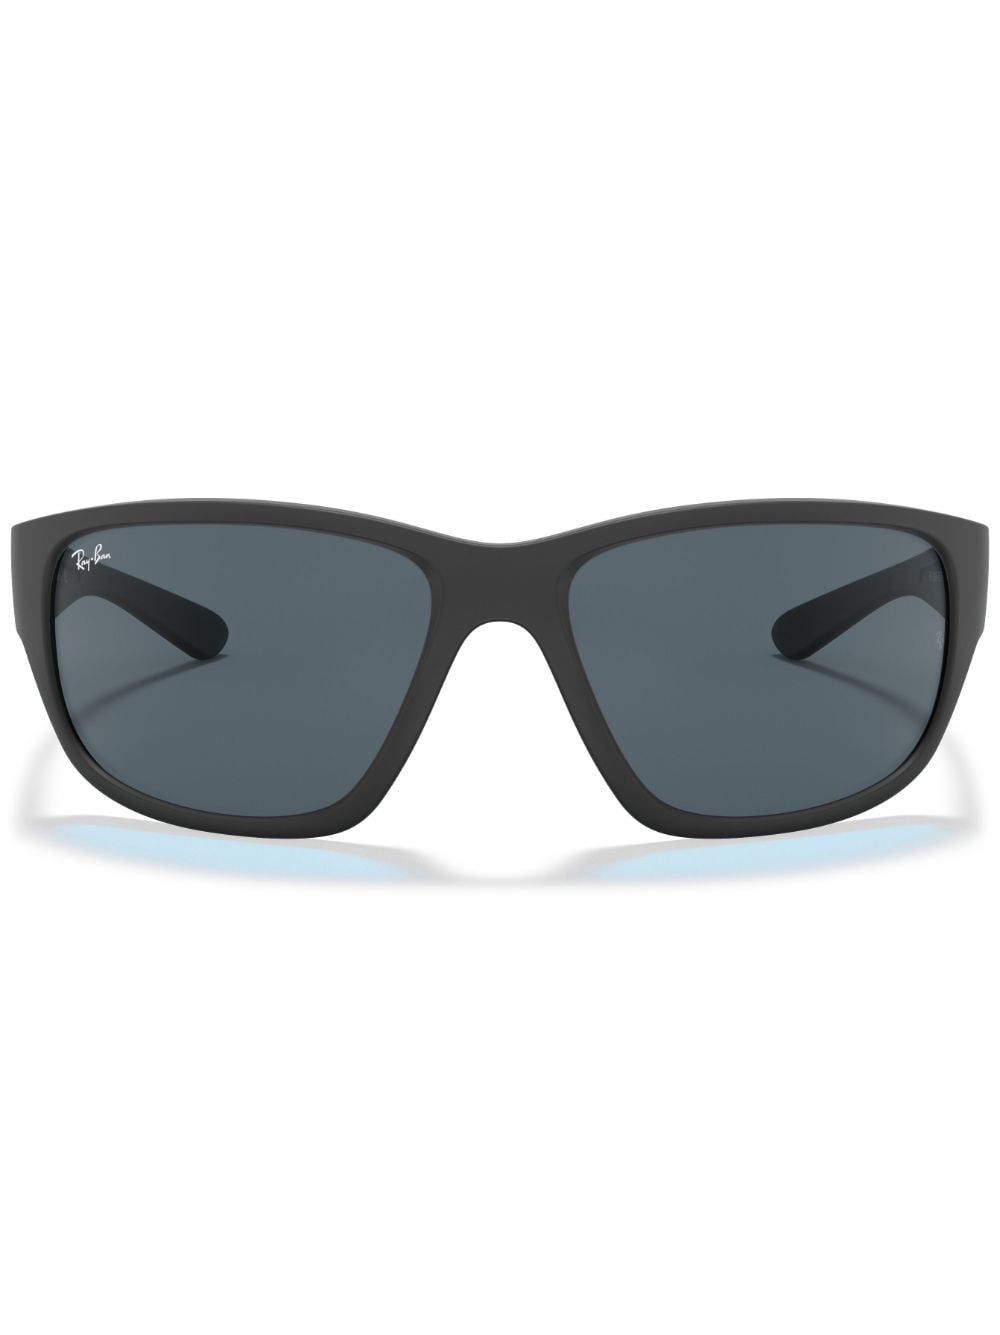  Ray-ban Matte Square Sunglasses - Black 